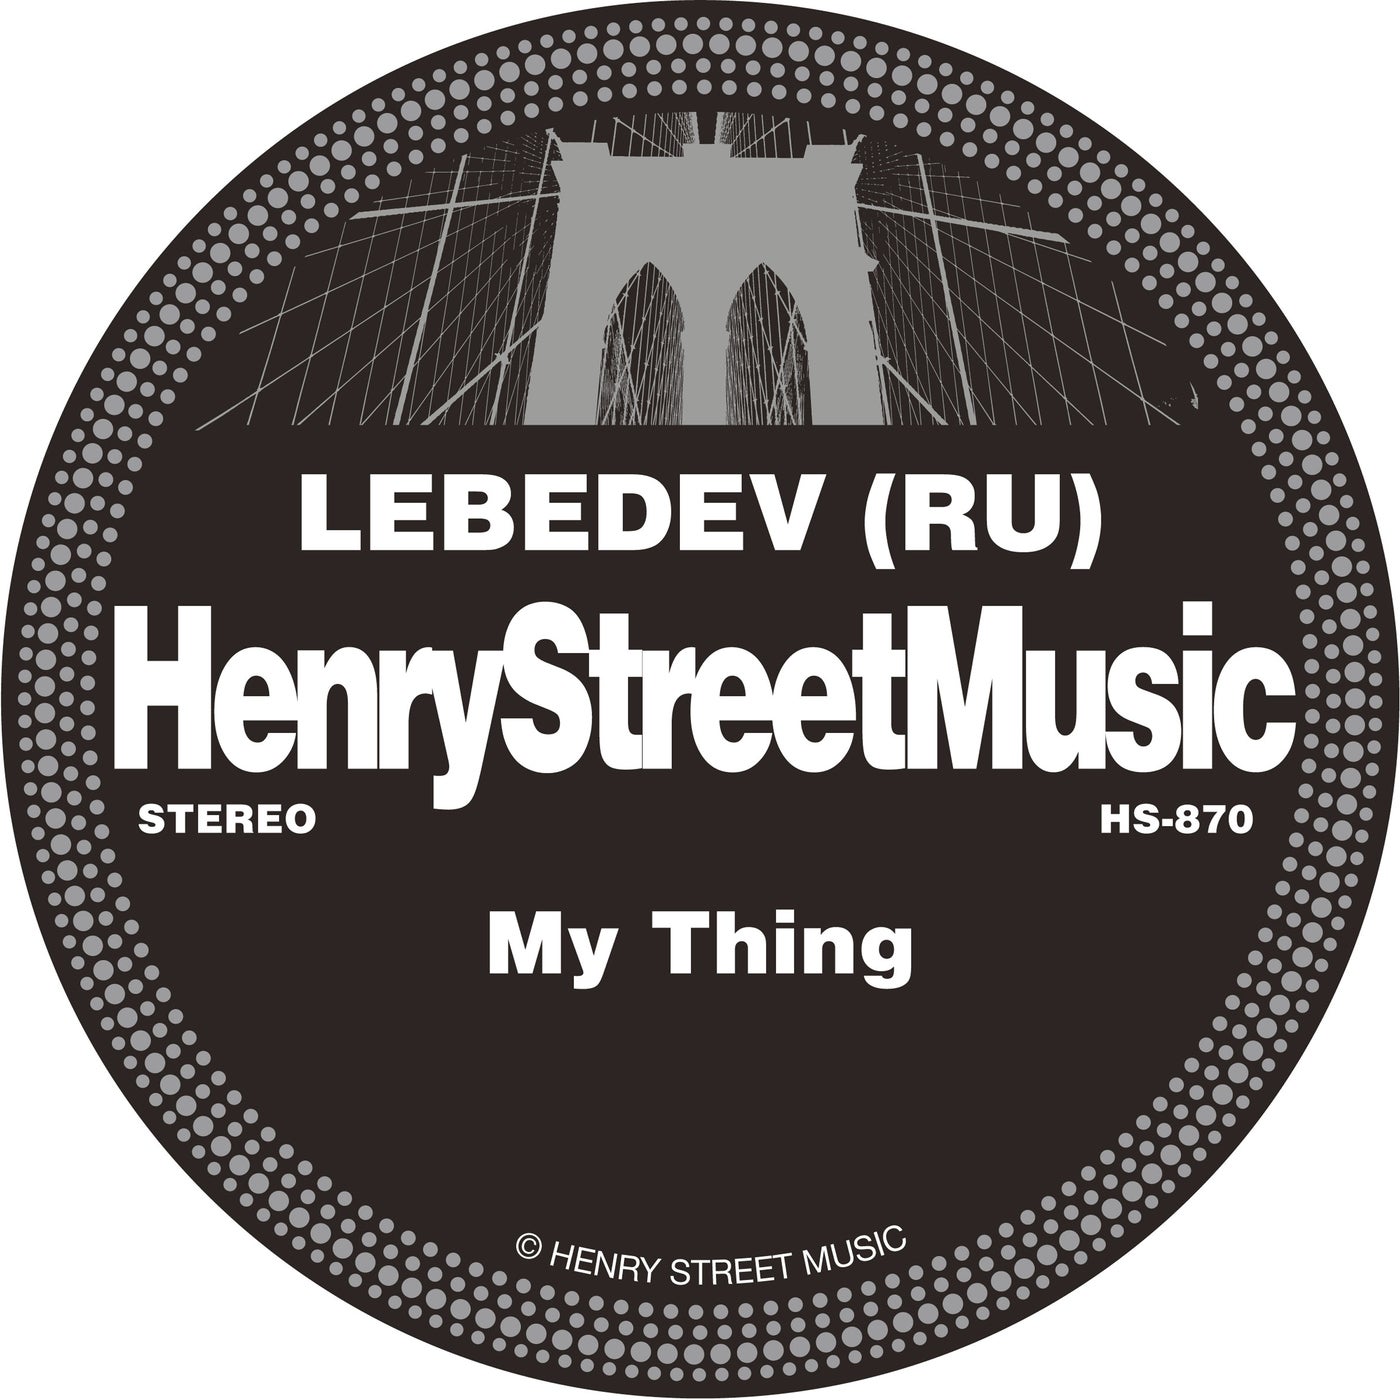 Lebedev (RU) – My Thing [HS870]